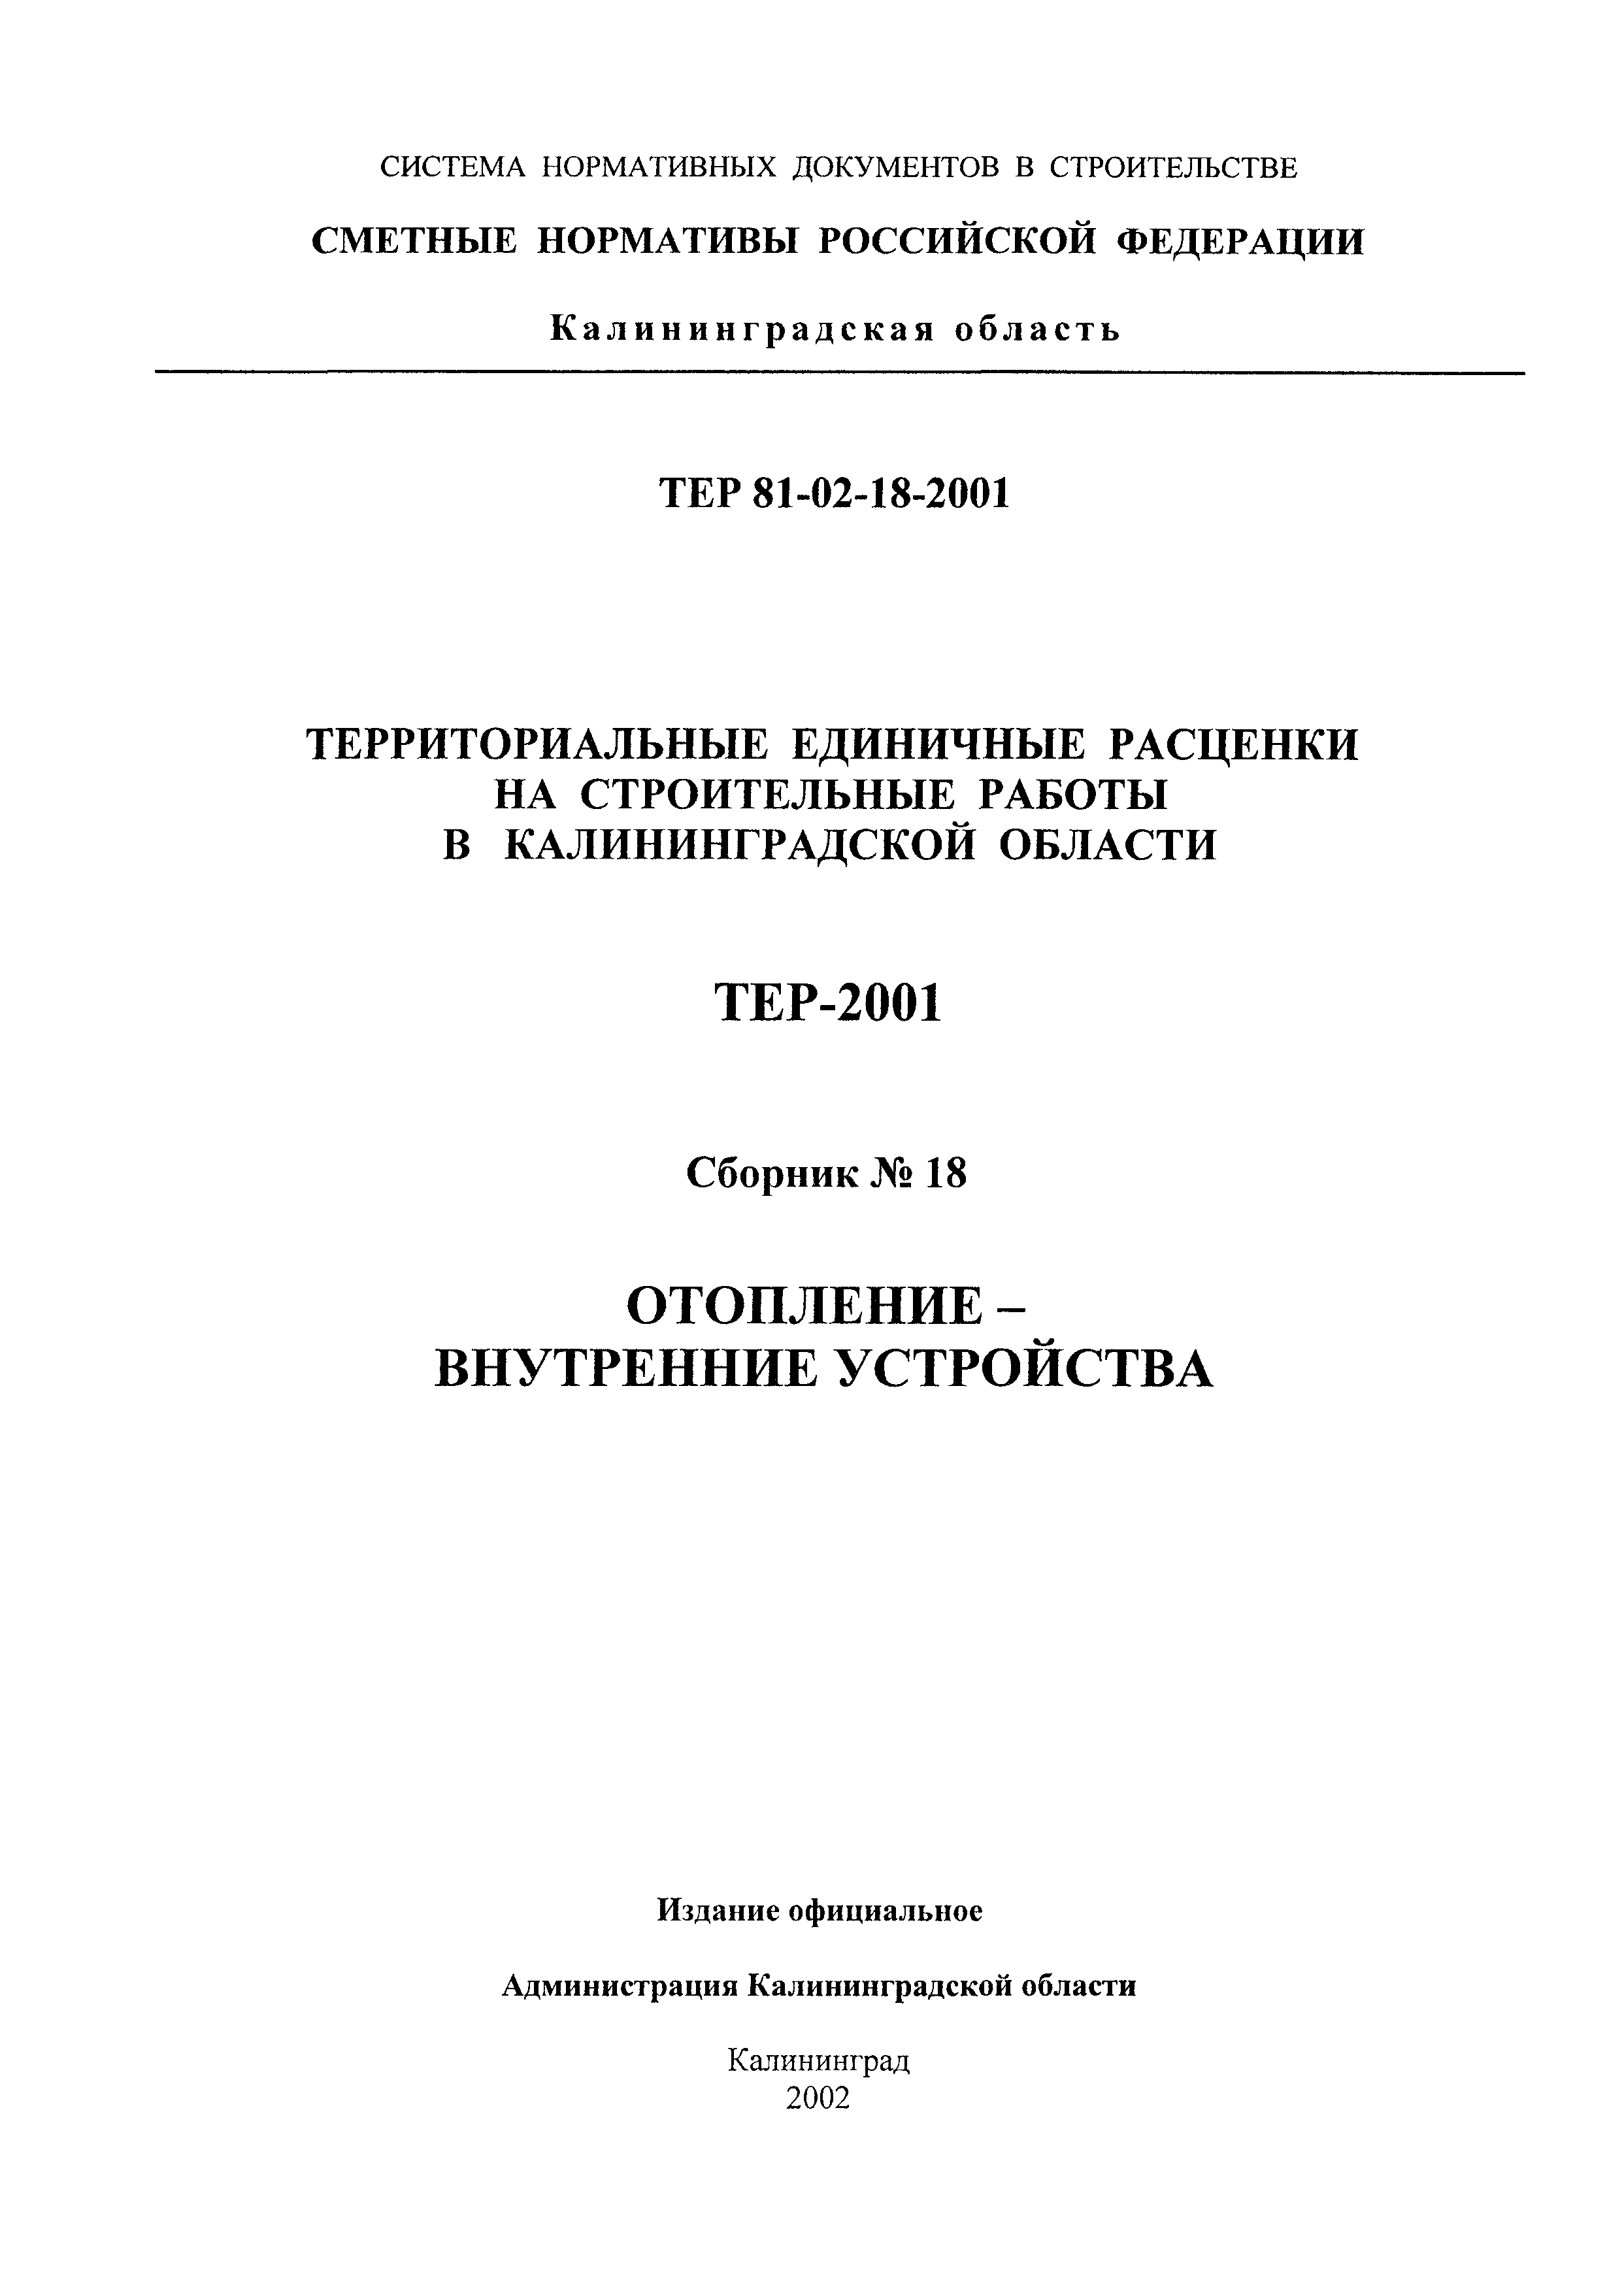 ТЕР Калининградской области 2001-18